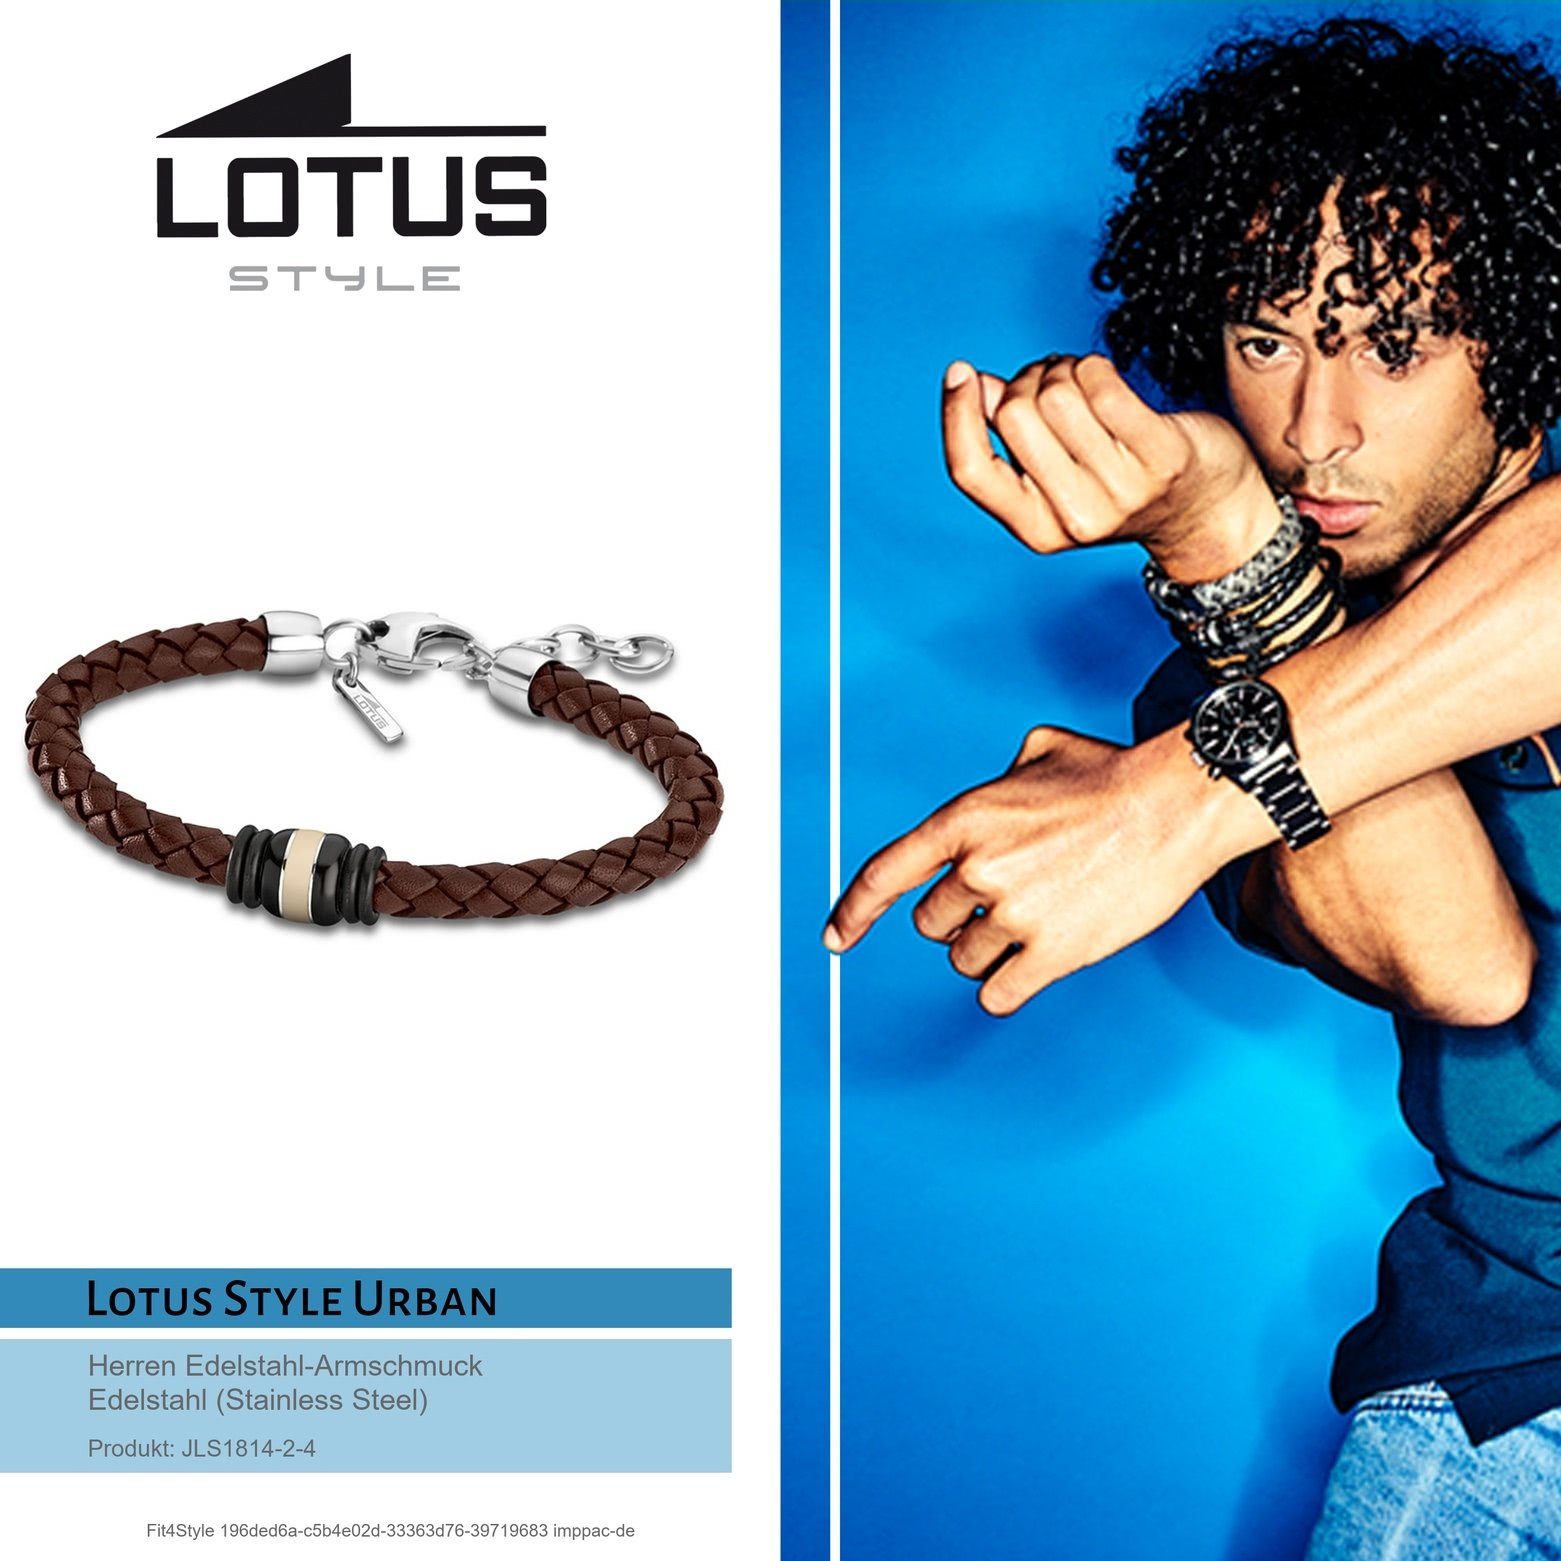 Steel) Edelstahlarmband Armbänder Style für (Armband), Style Herren Armband braun Edelstahl silber Lotus (Stainless Lotus